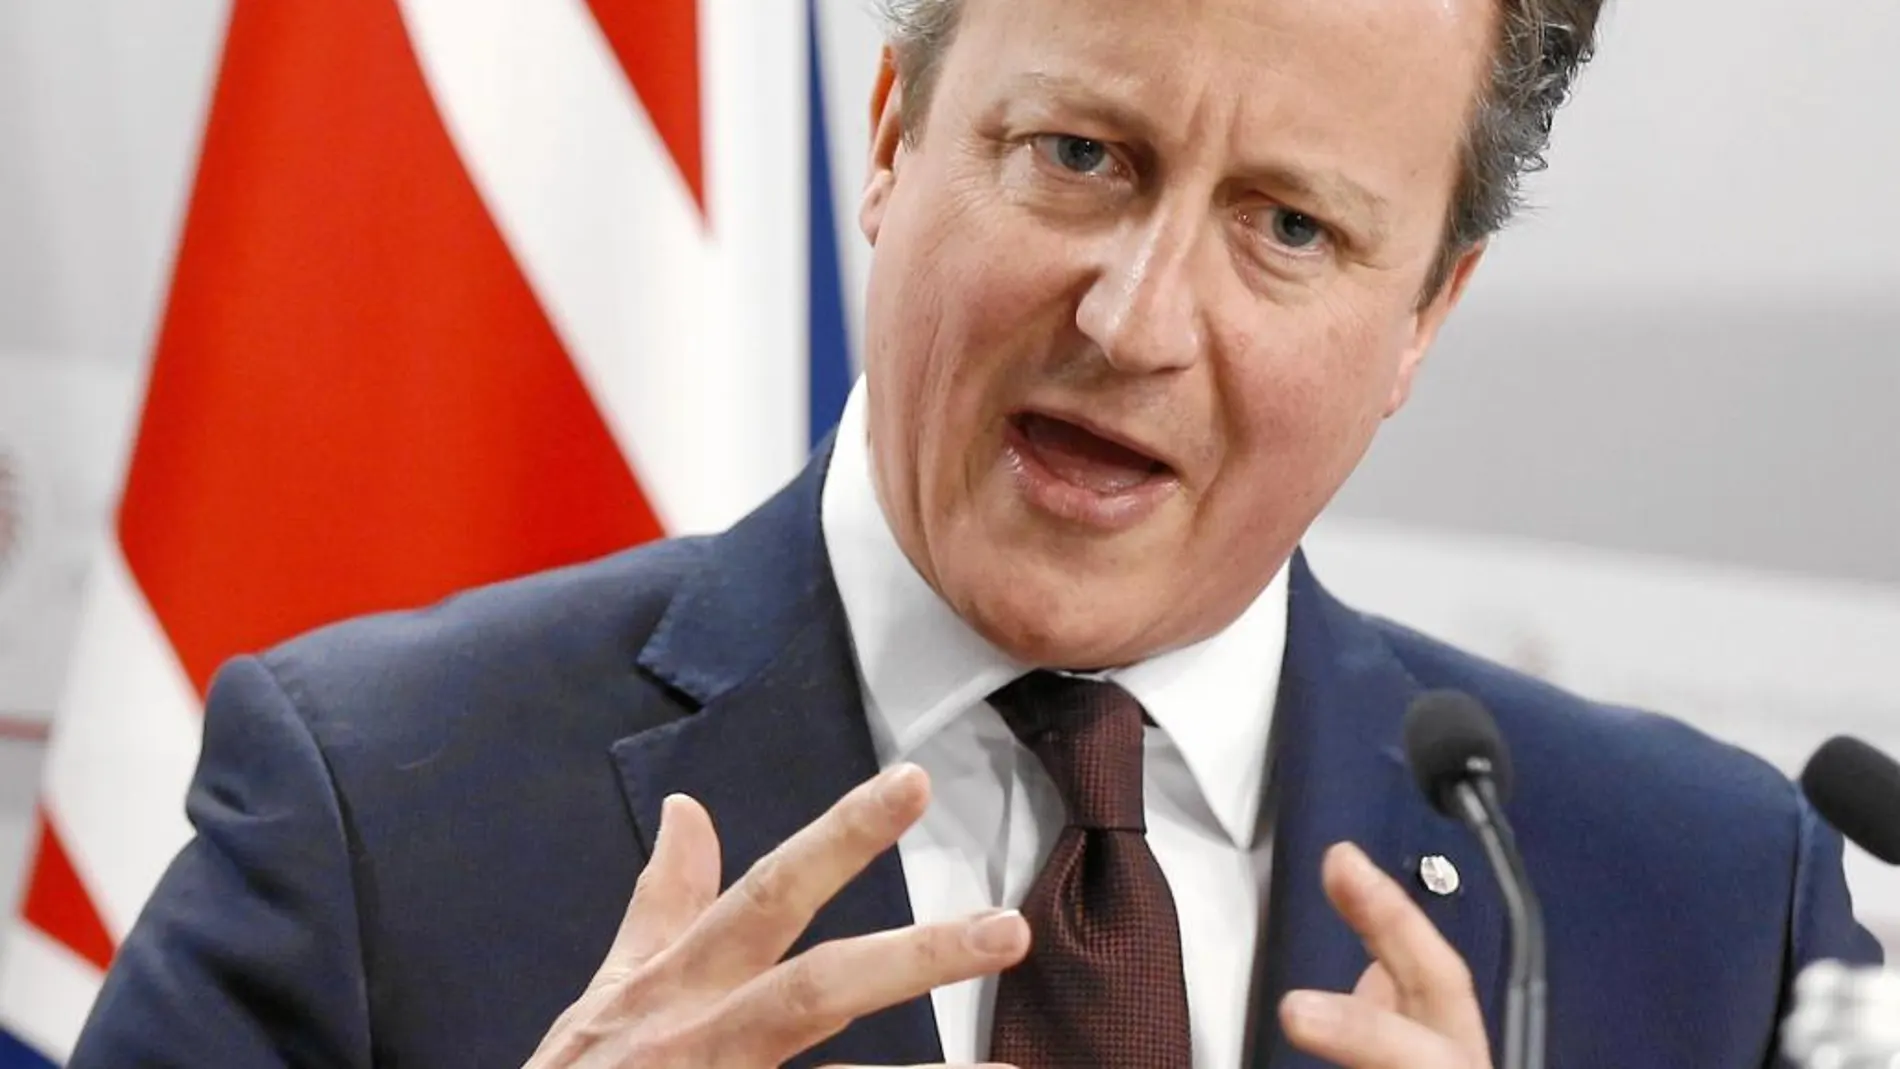 Cameron quiere plantear sus demandas antes de convocar el referéndum